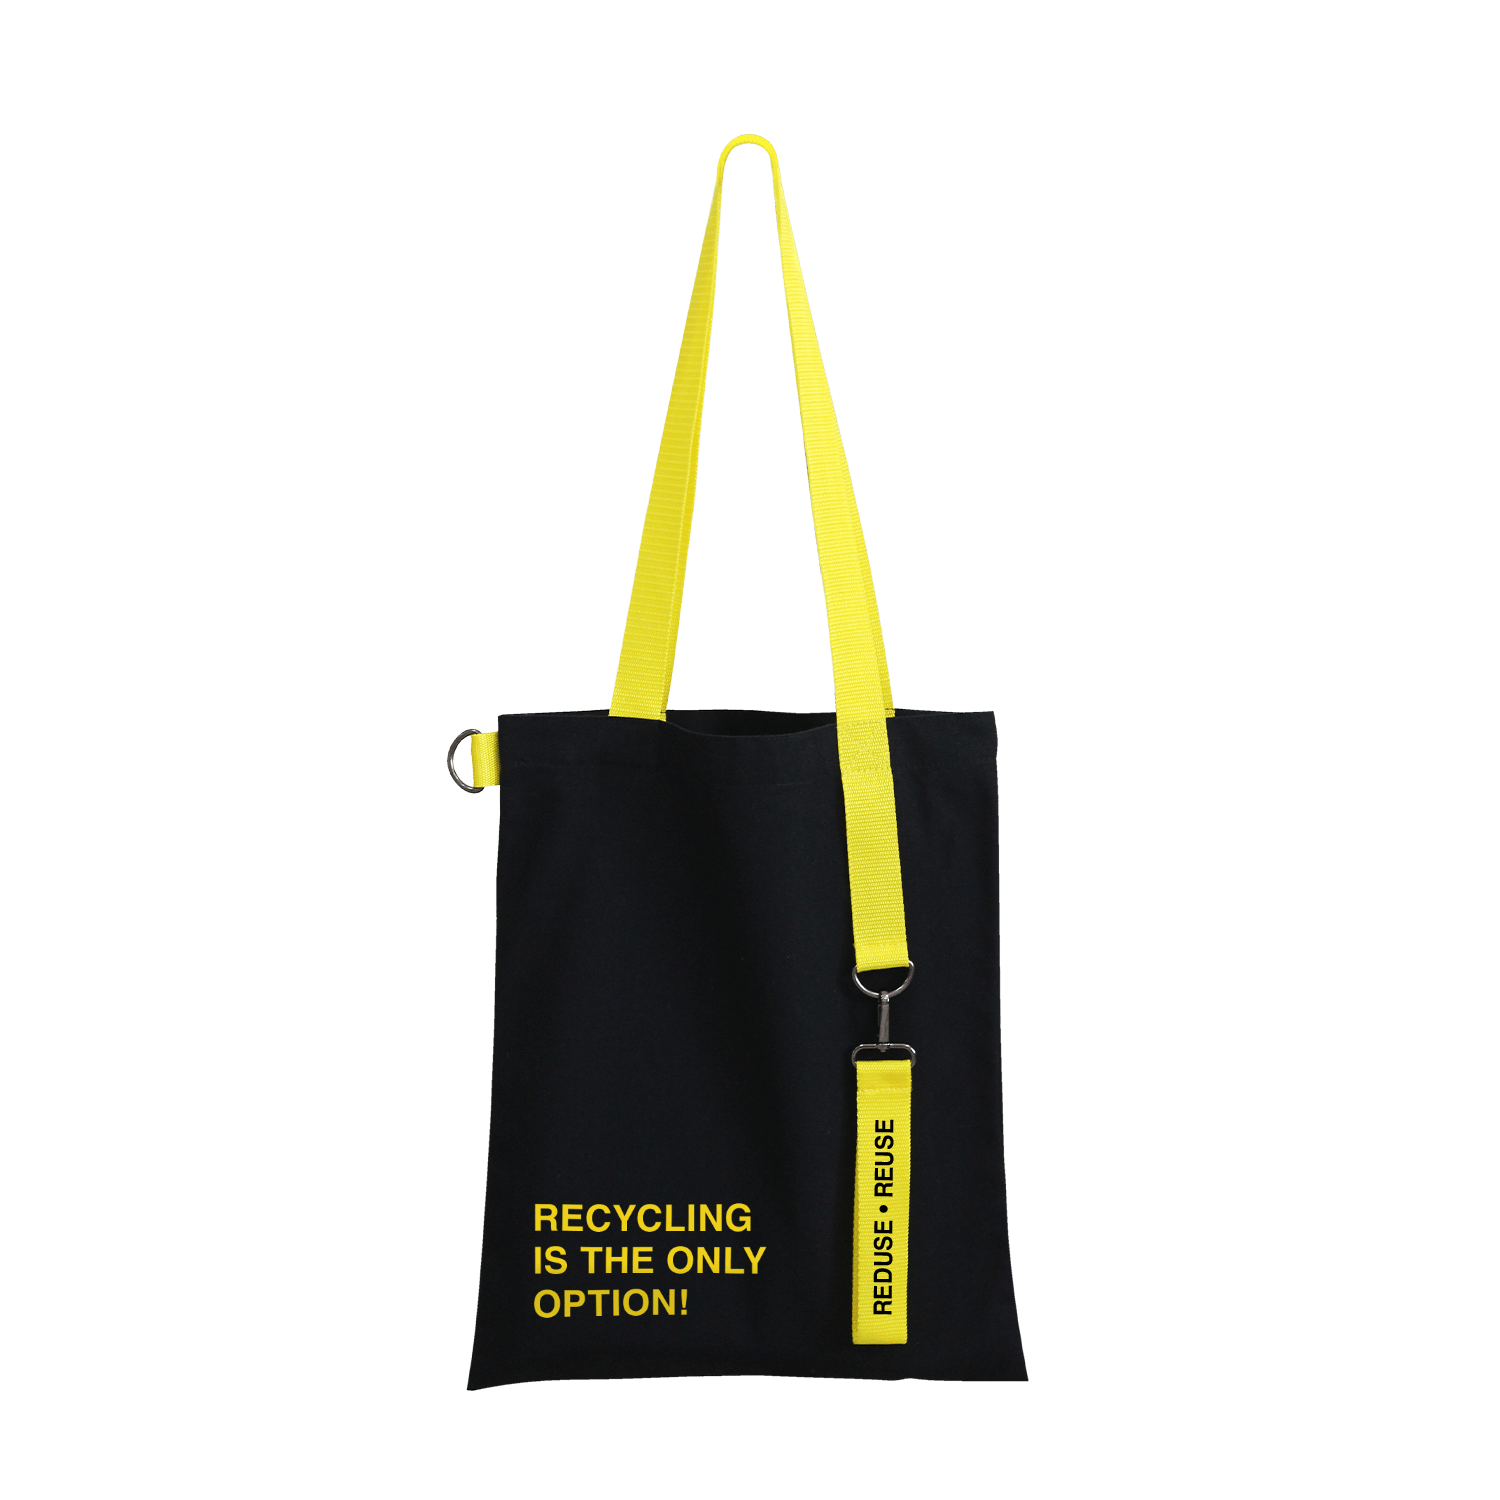 Набор Cofer Bag 10000 (жёлтый с чёрным), soft touch